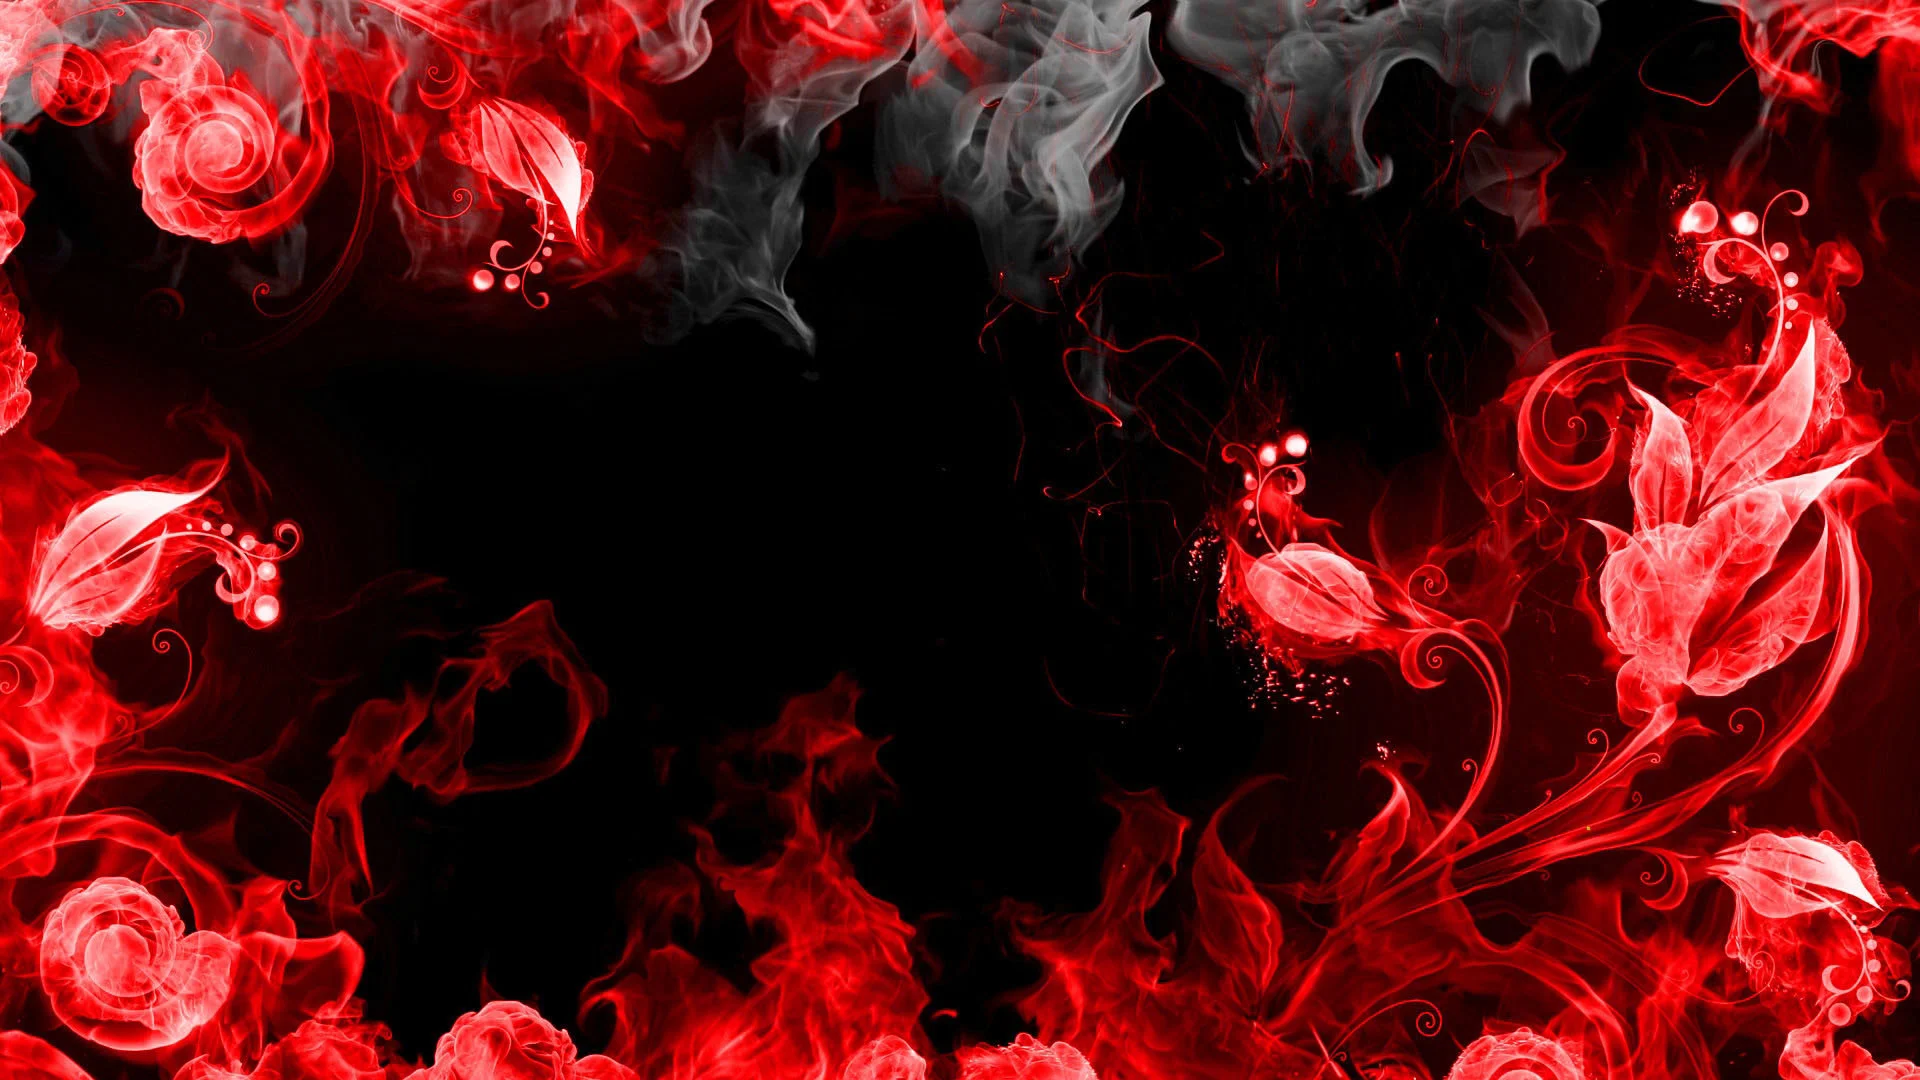 Thưởng thức vẻ đẹp sang trọng của đen đỏ nền trên hình ảnh này. Được tạo nên từ sự tương phản độc đáo, đen đỏ tạo nên một không gian thật đặc biệt cho màn hình của bạn.